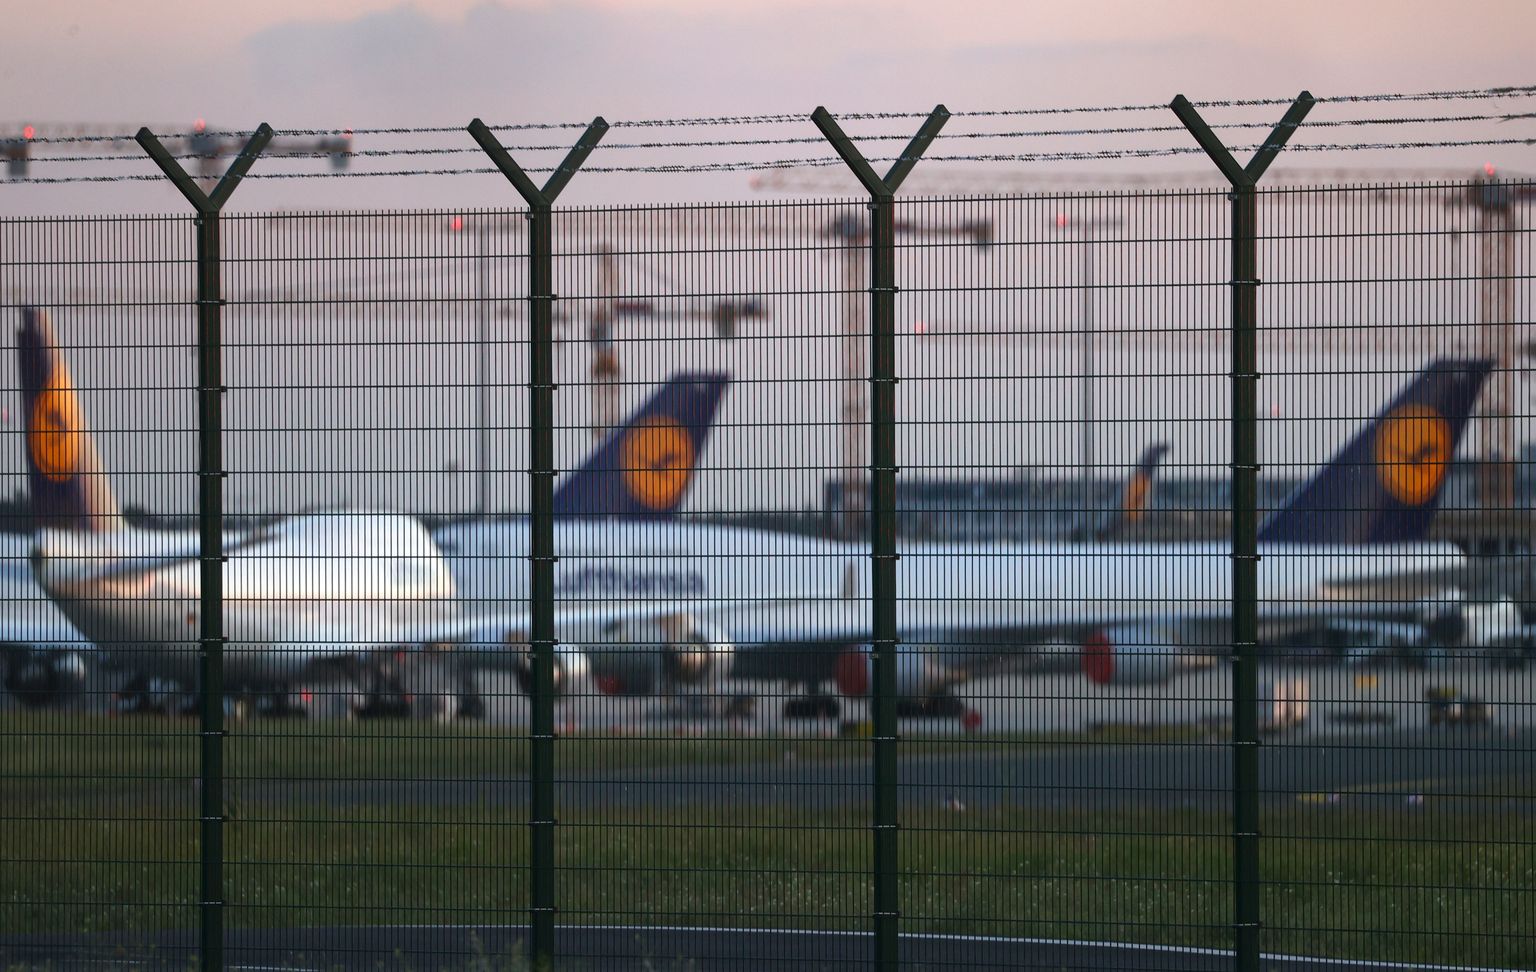 Lufthansa lennukid seisavad Frankfurdi lennuväljal.